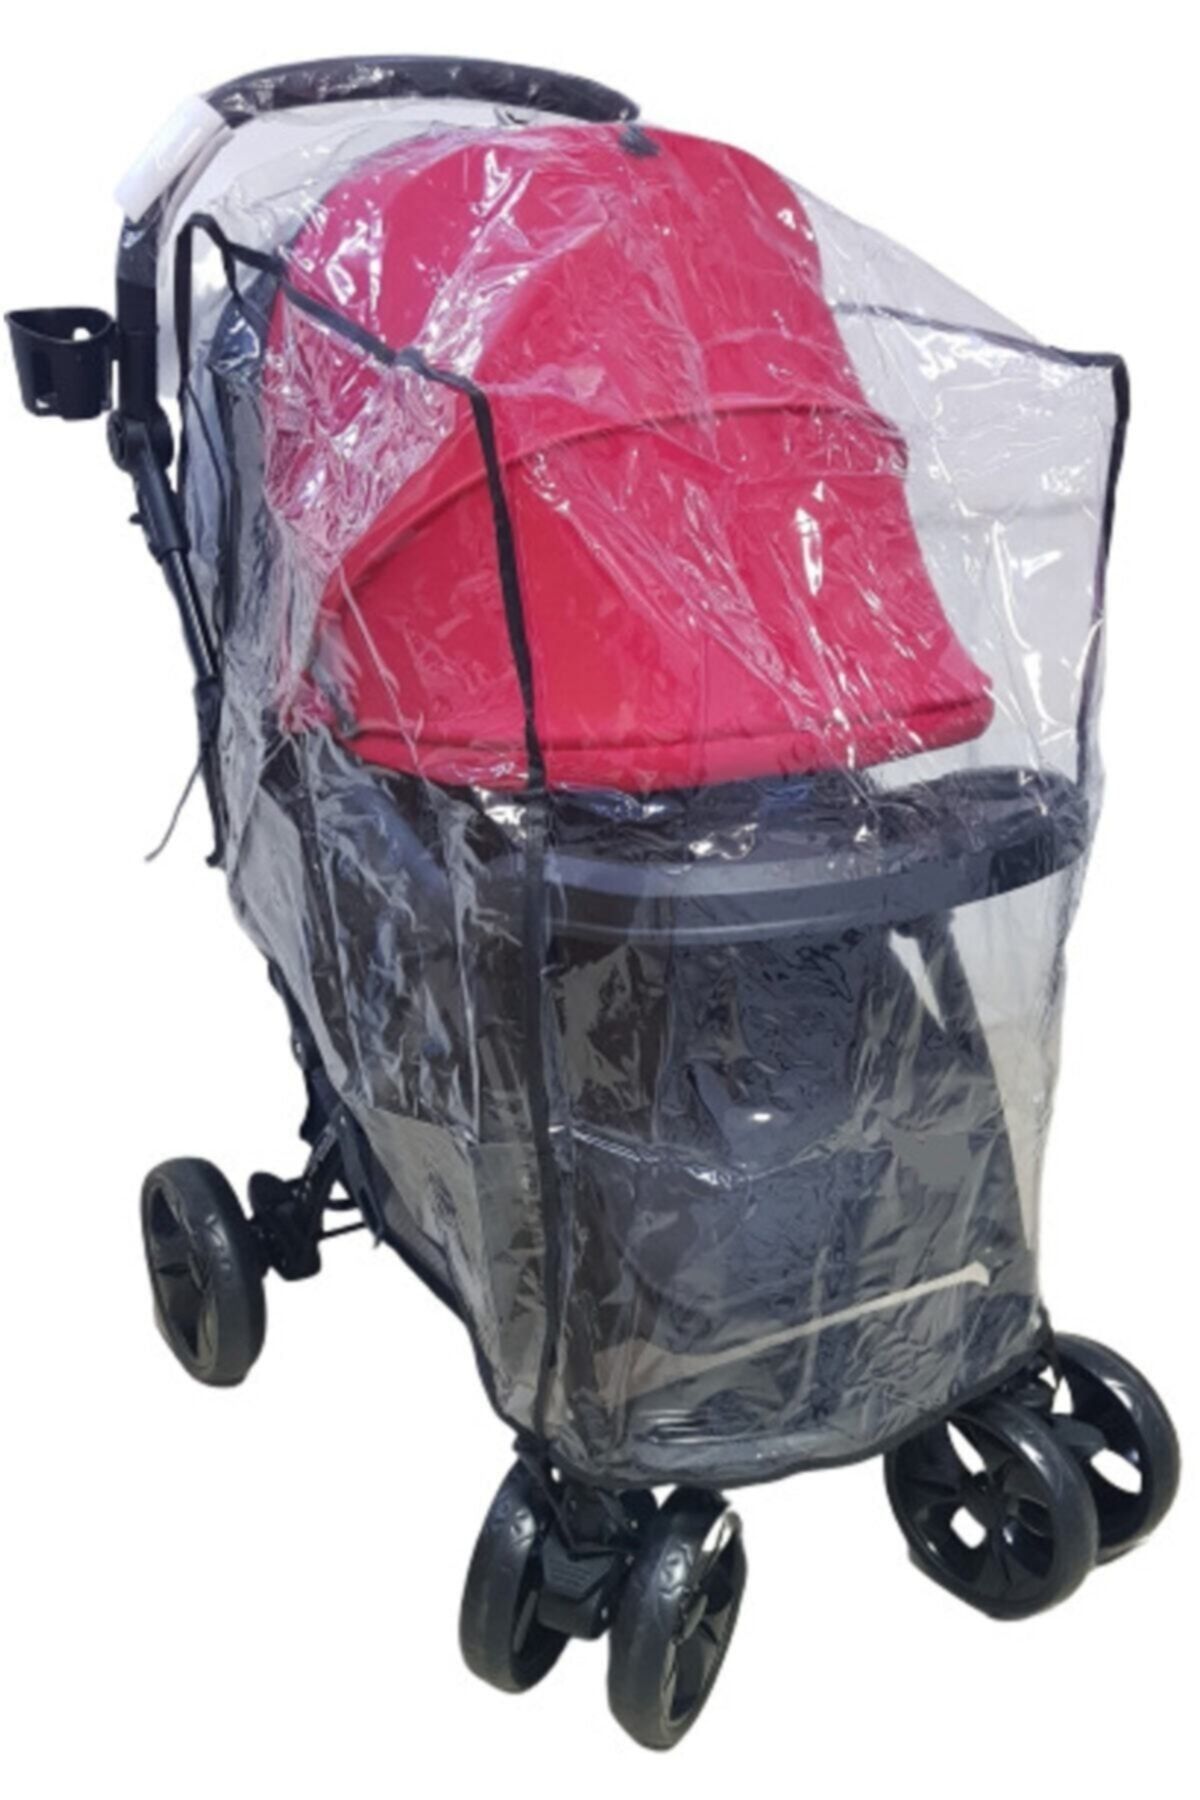 Ritim Özel Ölçü Xl Boy Bebek Arabası Yağmurluğu, Büyük Boy Geniş Bebek Arabası Yağmurluk, 14 Micron